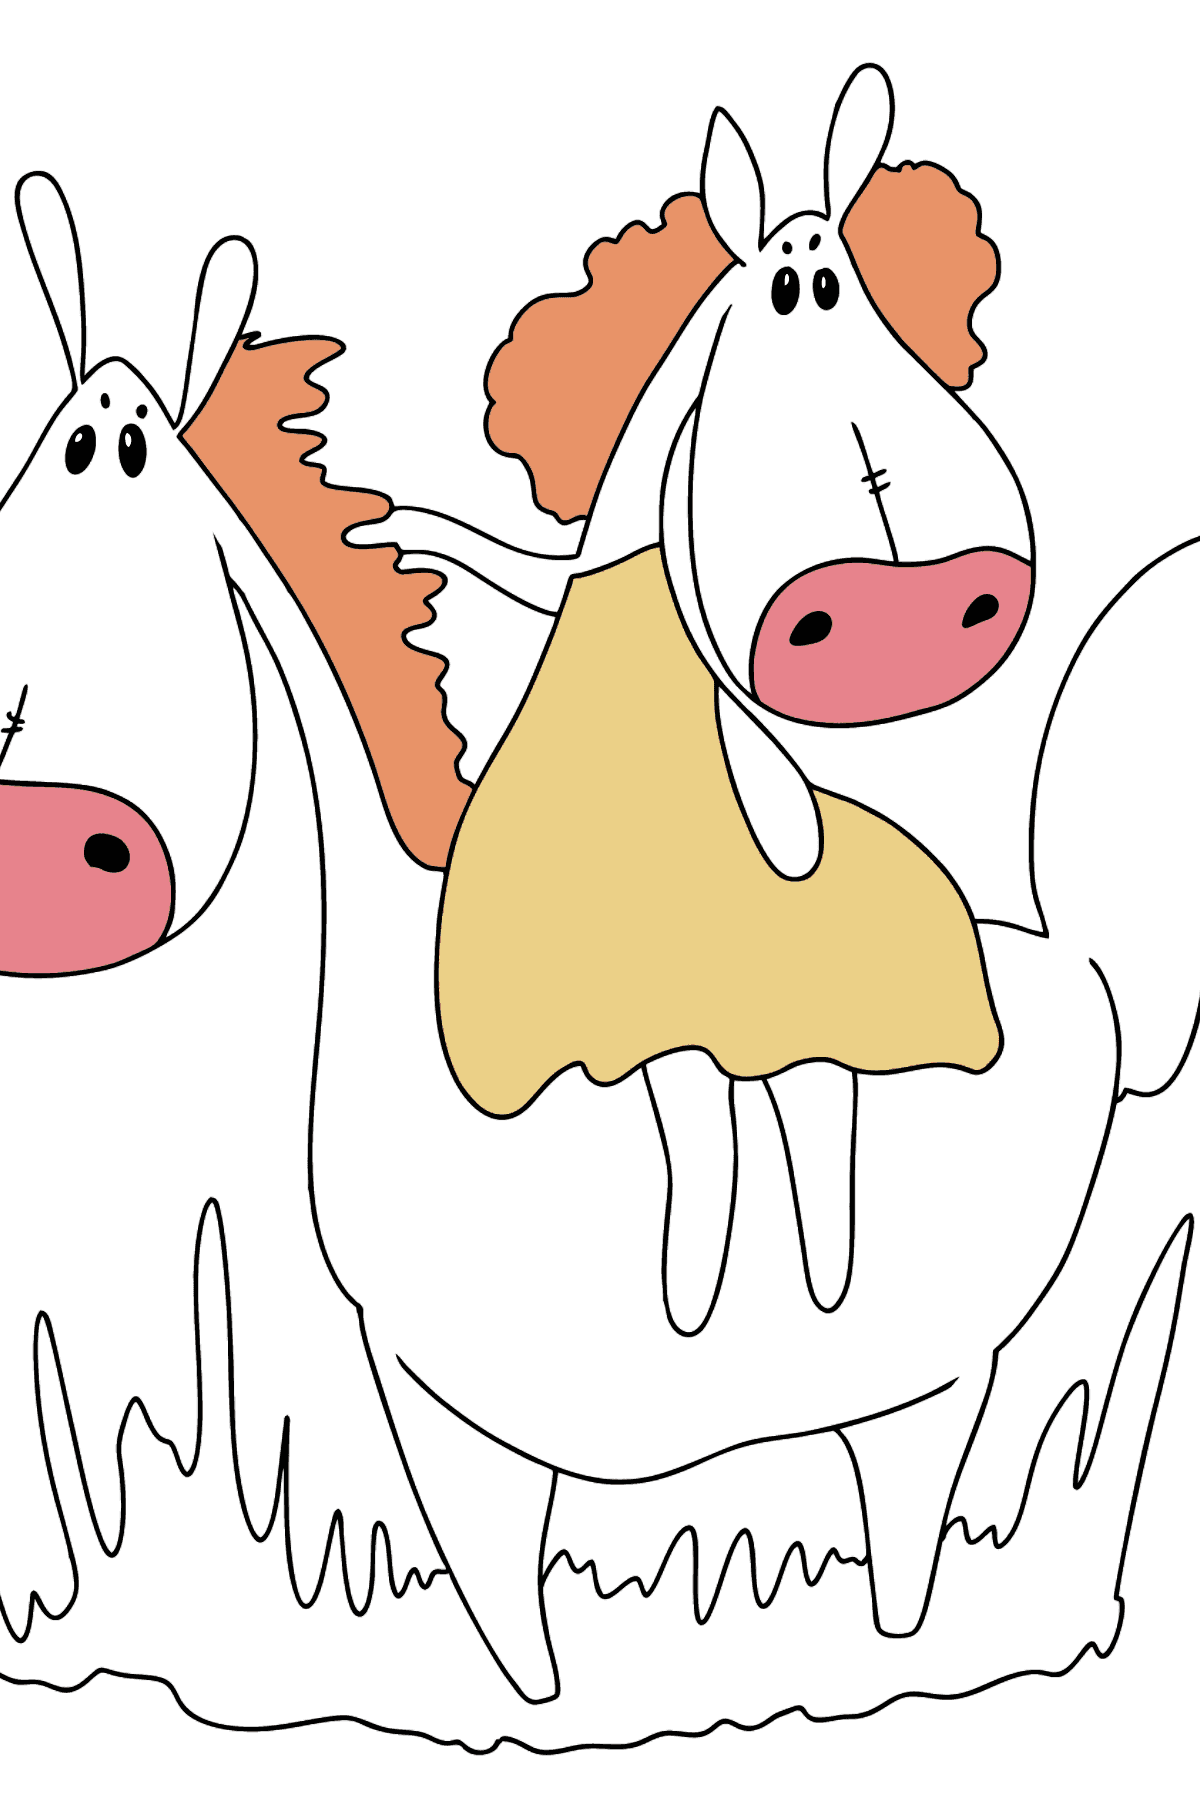 Desenho para colorir de cavalo para passear fácil - Imagens para Colorir para Crianças